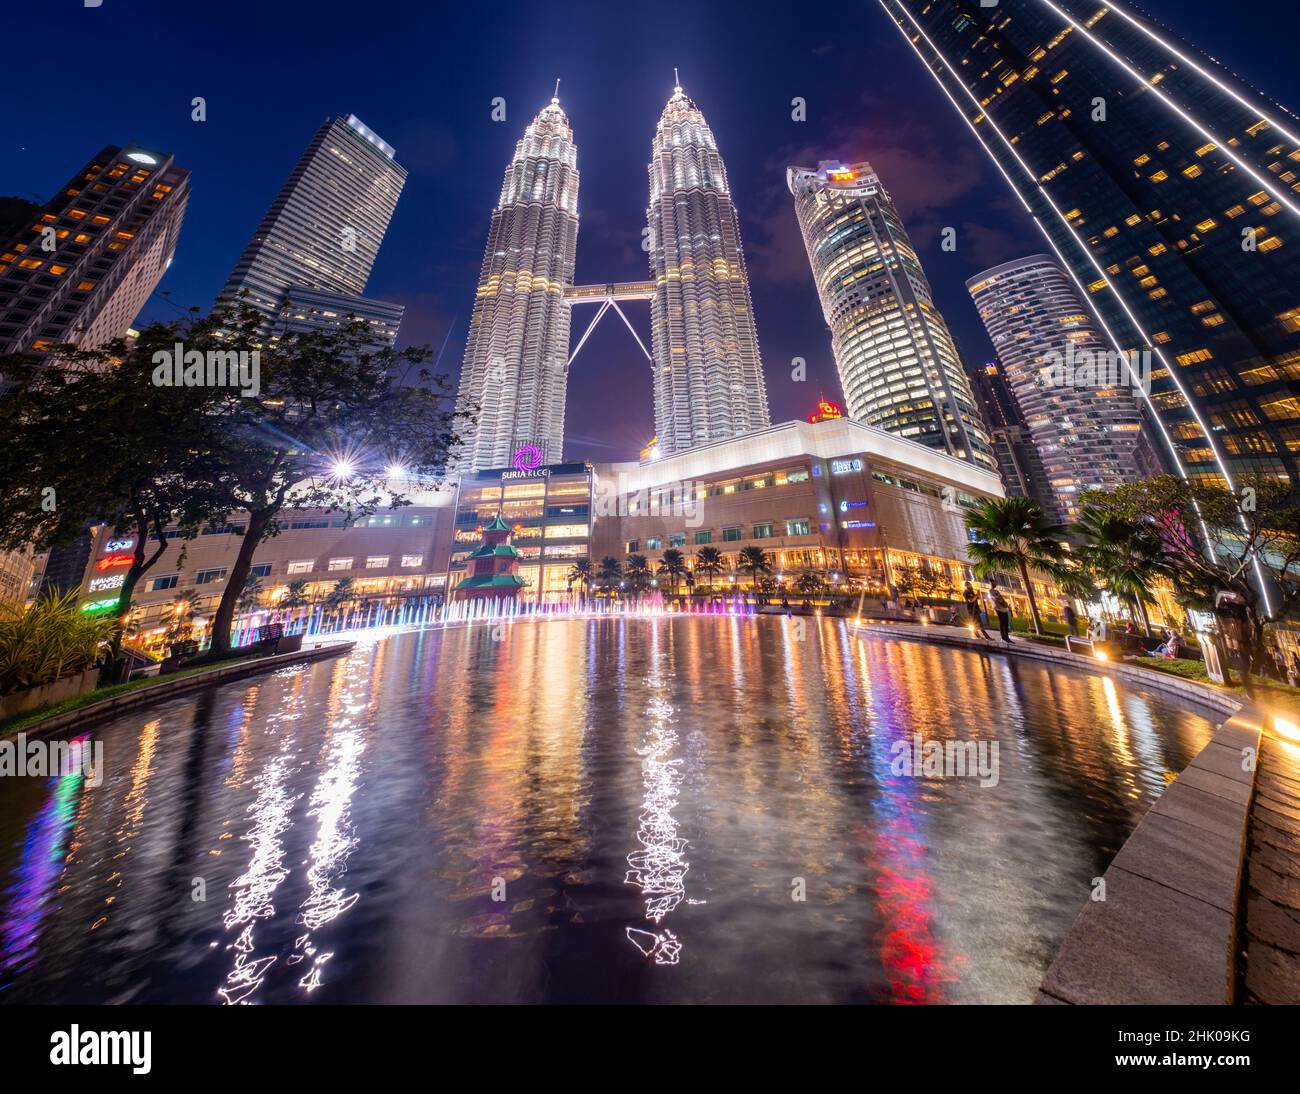 Kuala Lumpur, Malaisie - janvier 2022: Les tours Petronas et le centre commercial Suria du parc KLCC - célèbres gratte-ciels dans le monde entier Kuala Lumpur City CEN Banque D'Images